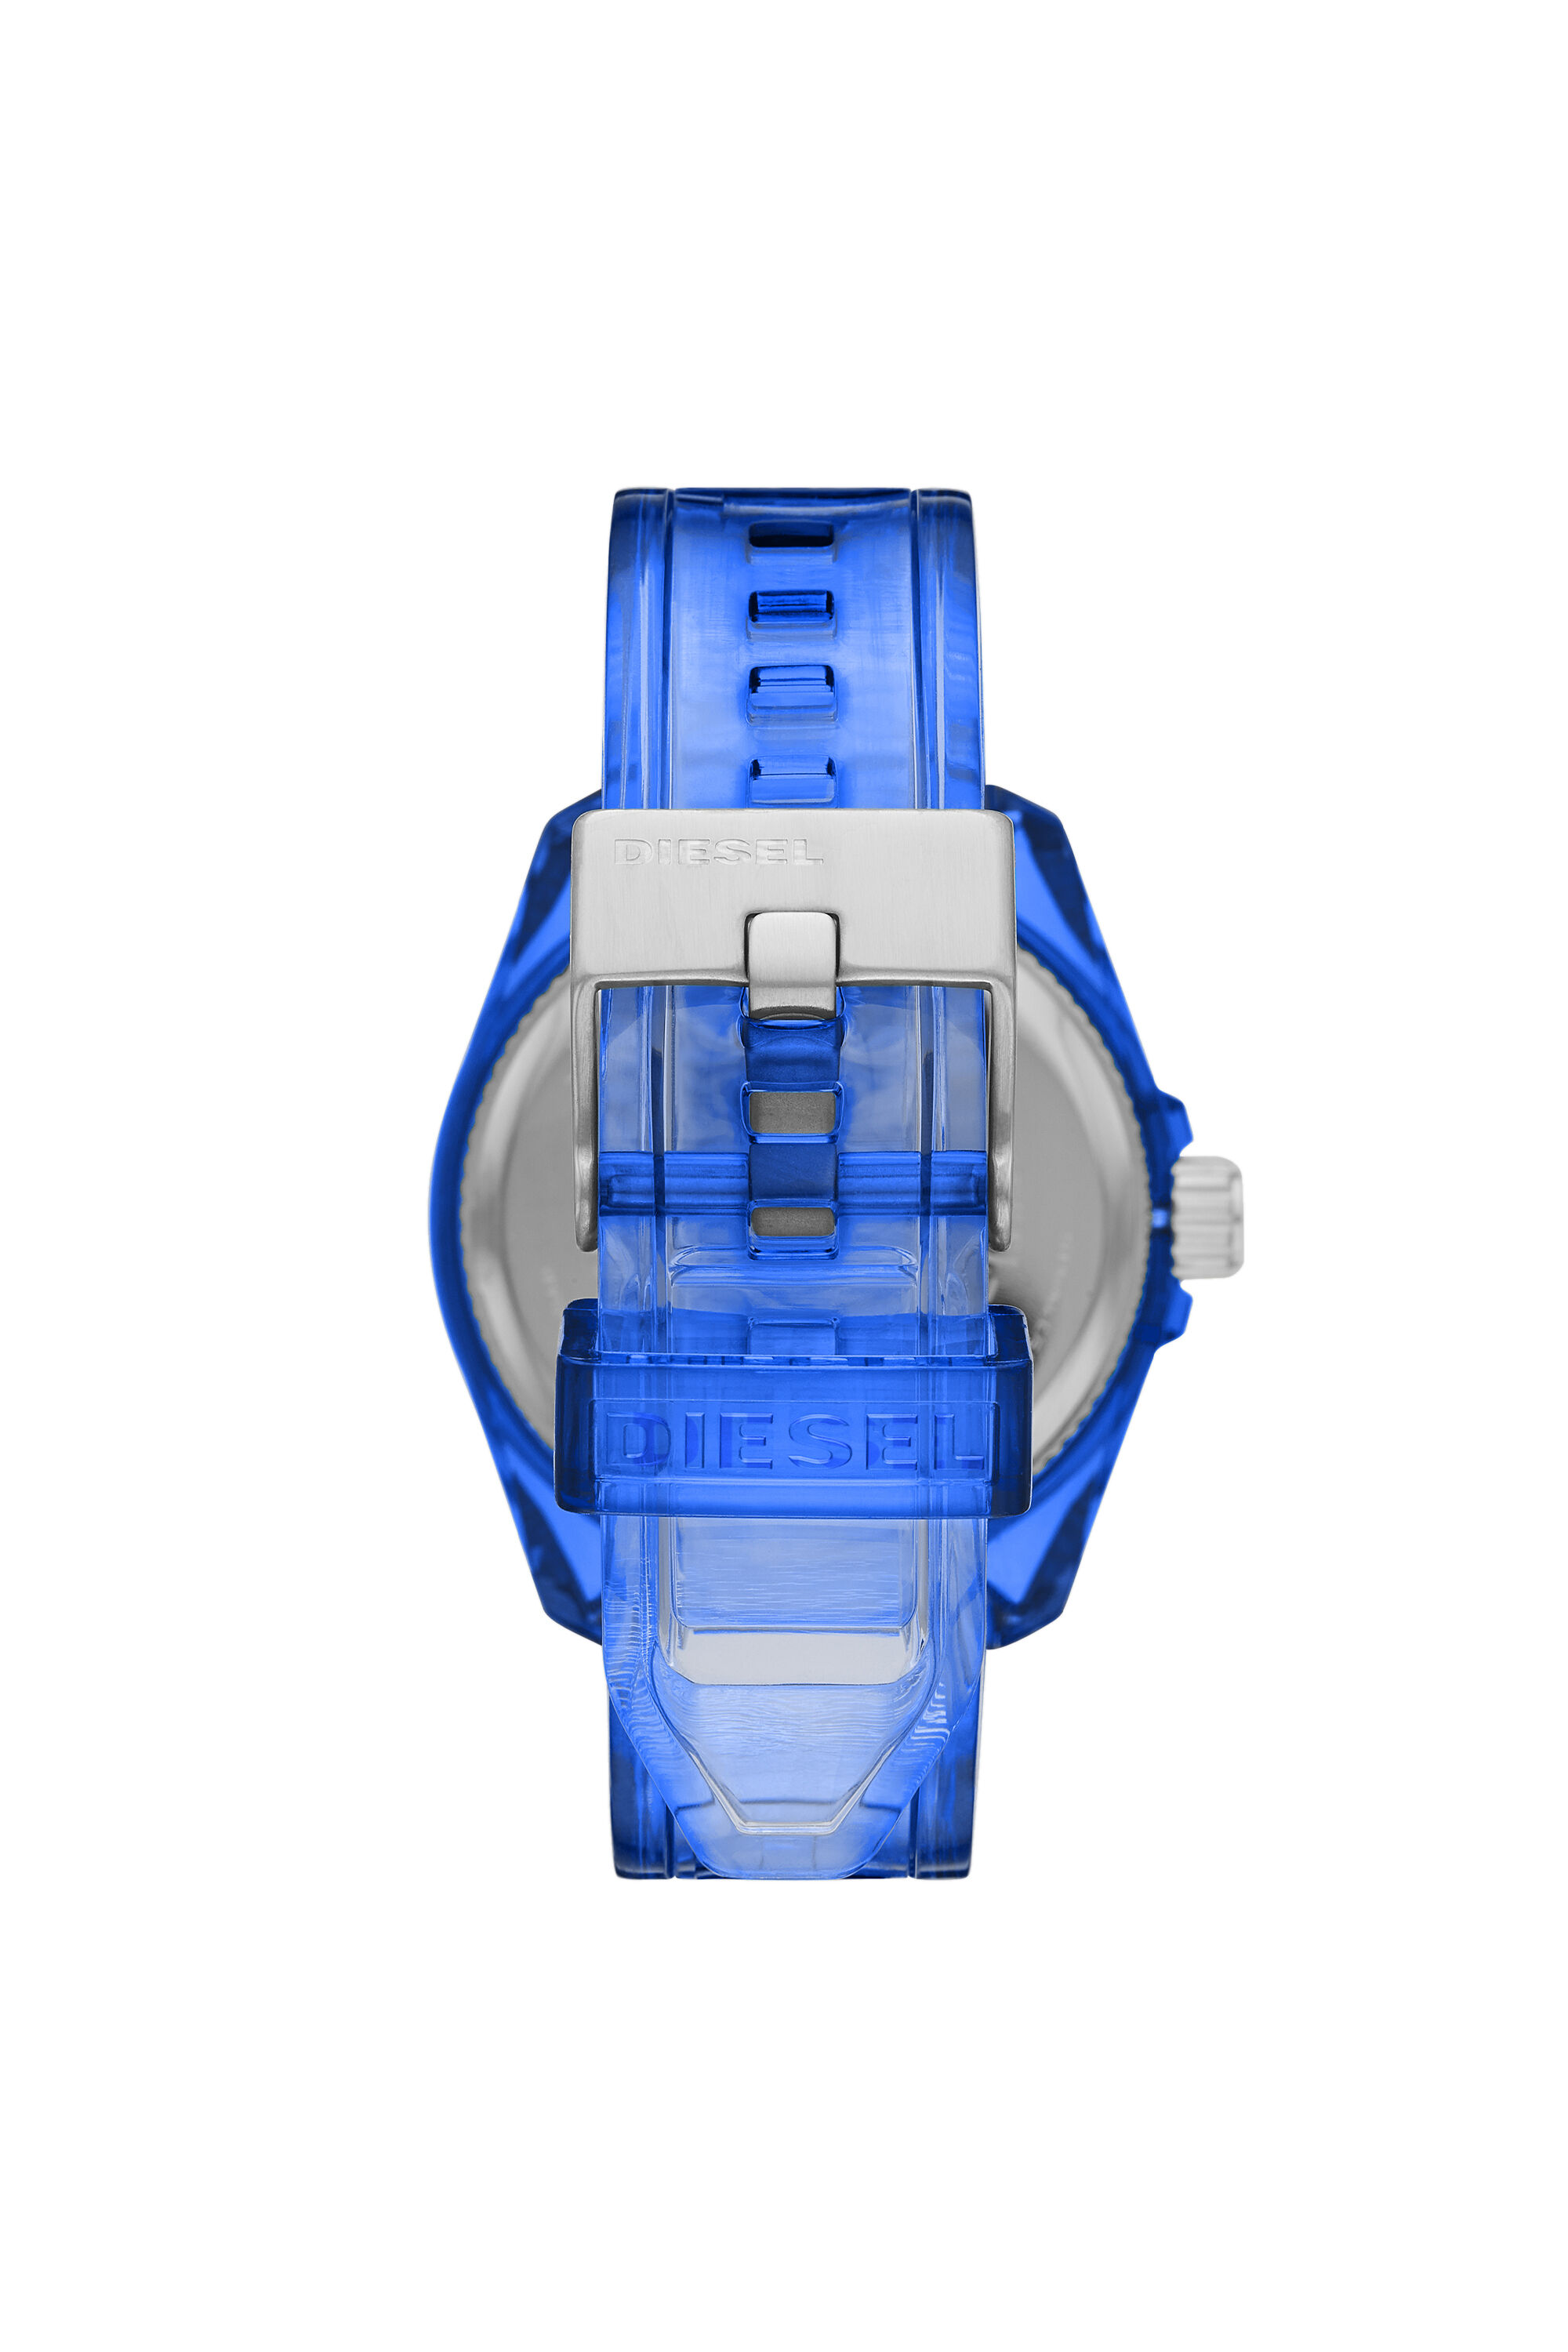 siete y media gasolina Auto DZ1927: Reloj MS9 de tres manecillas azul transparente | Diesel